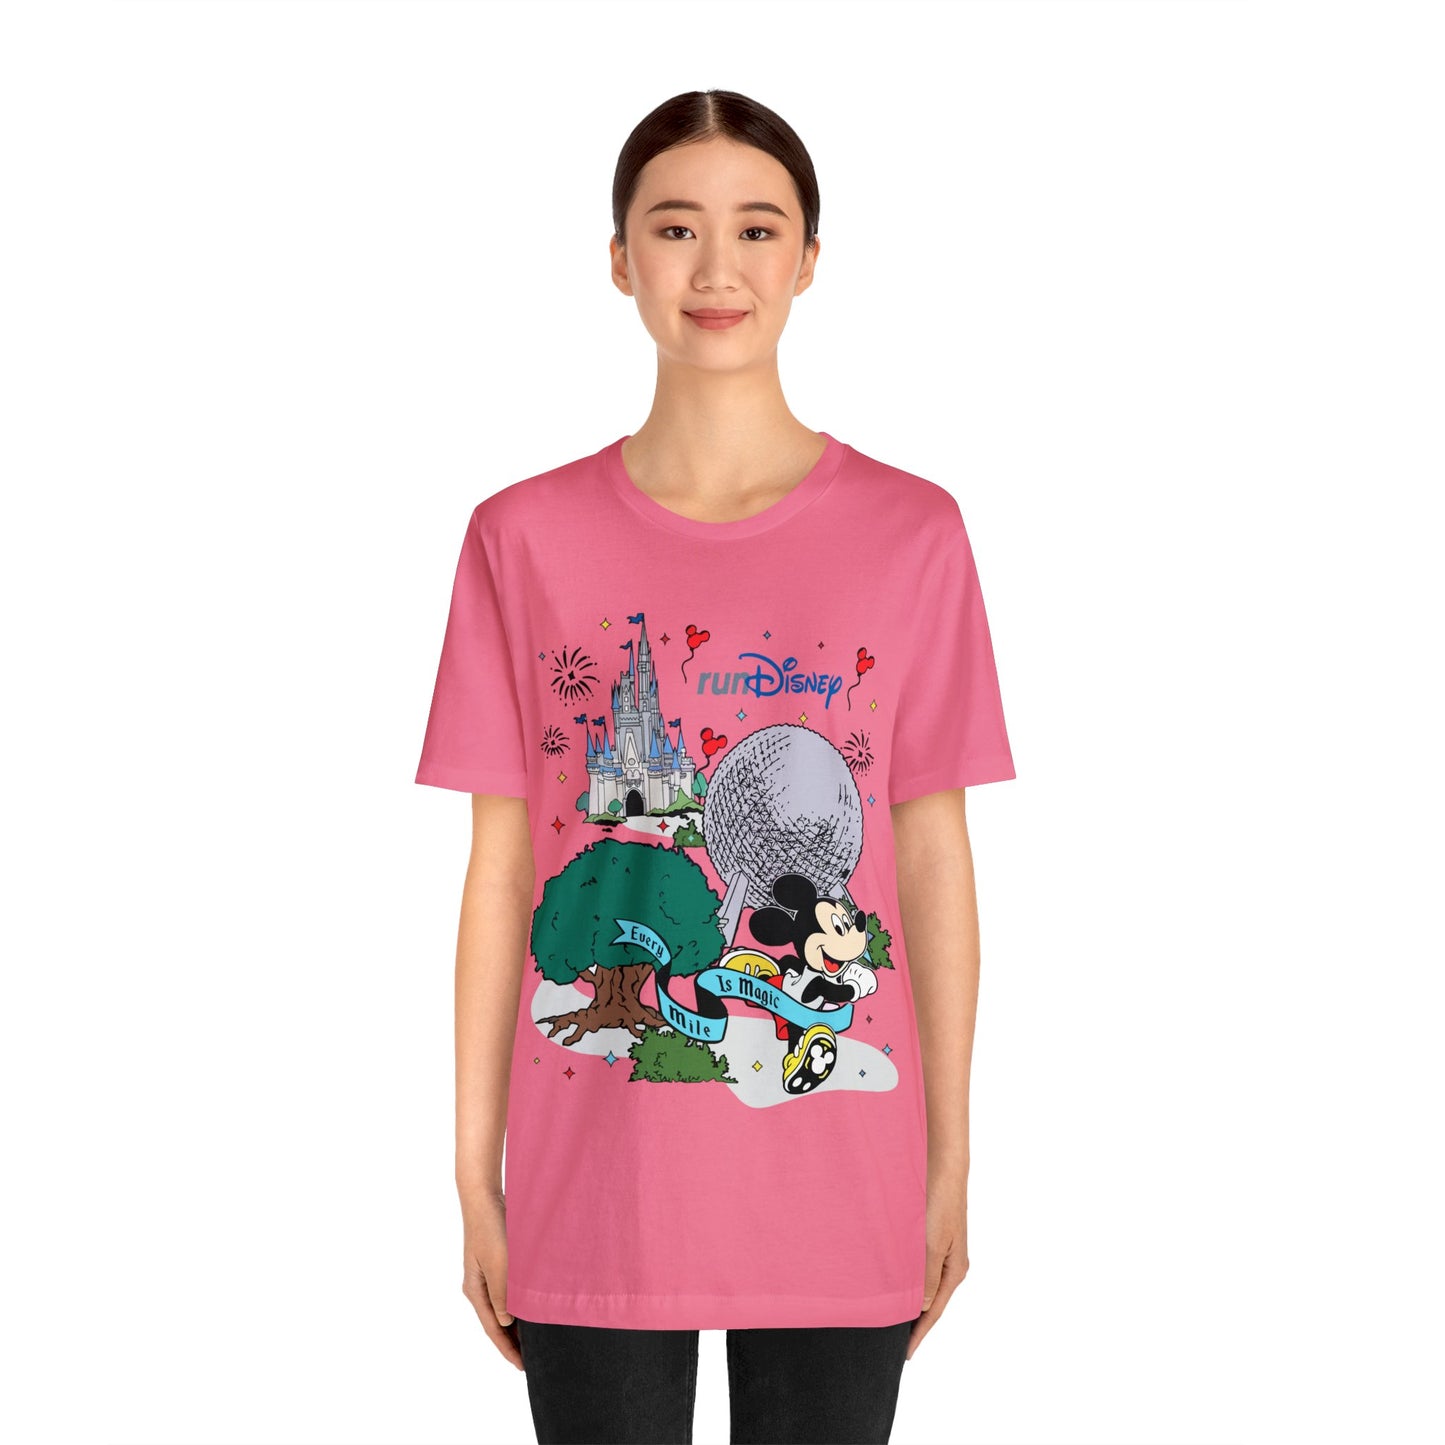 Run Disney Unisex Graphic Tee - Multiple Colors